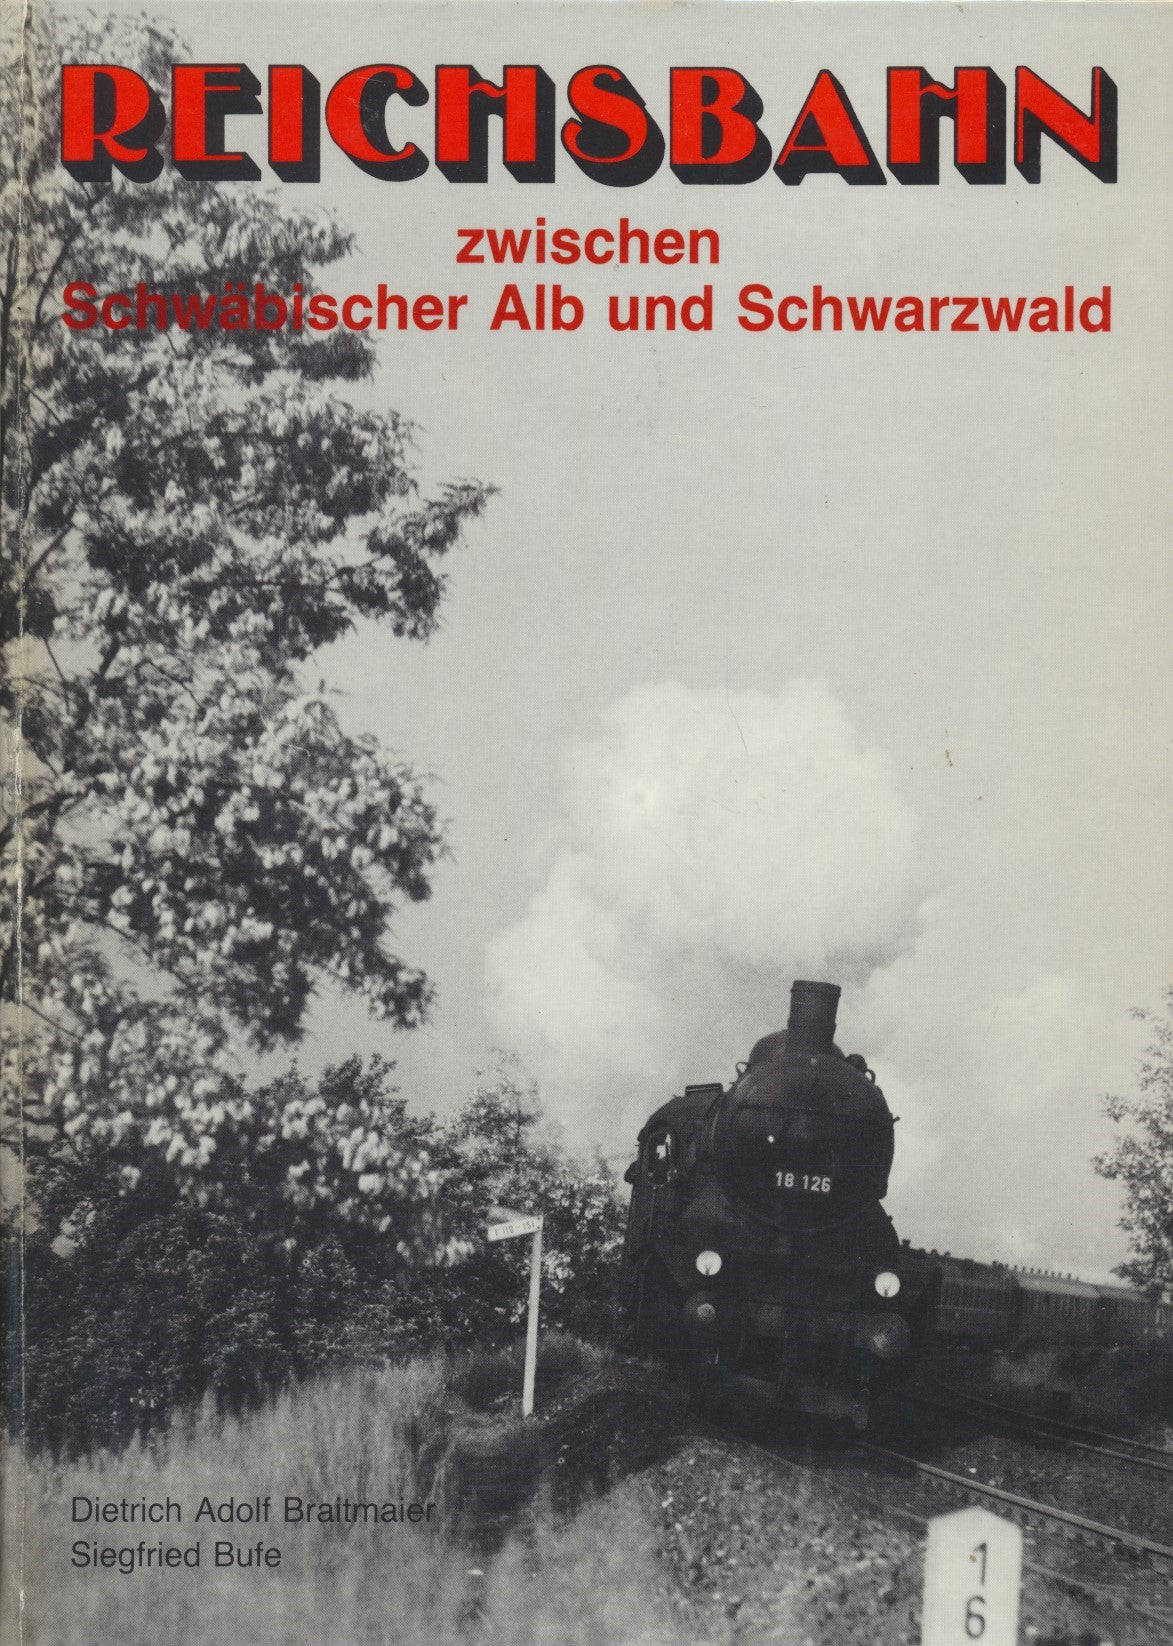 Reichsbahn zwischen Schwabischer Alb und Schwarzwald